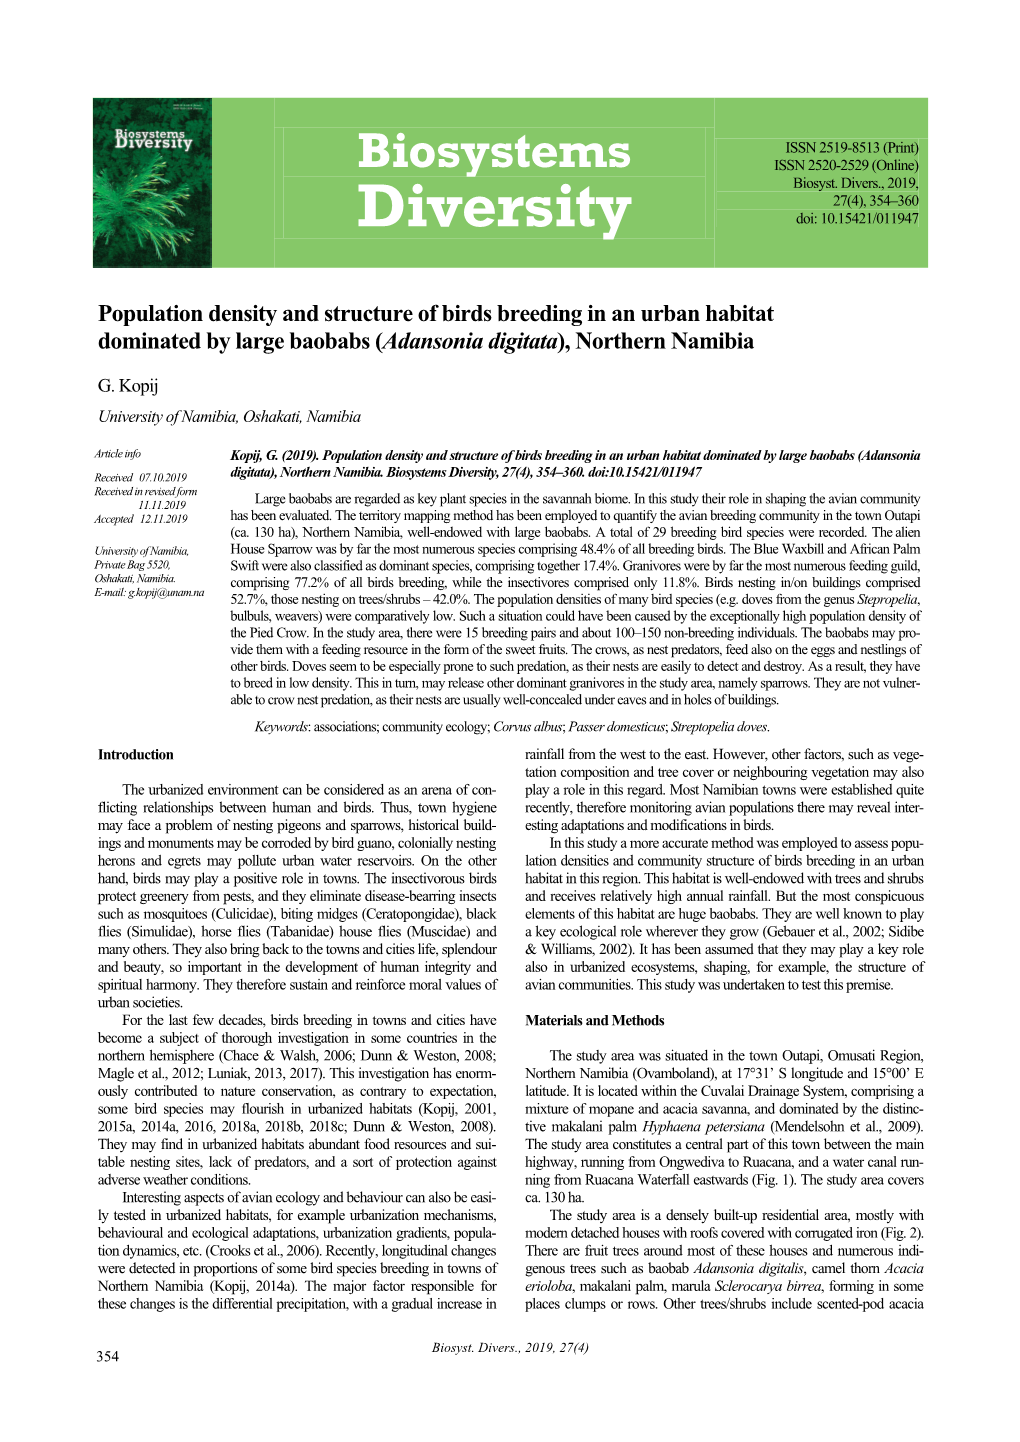 Biosystems ISSN 2520-2529 (Online) Biosyst